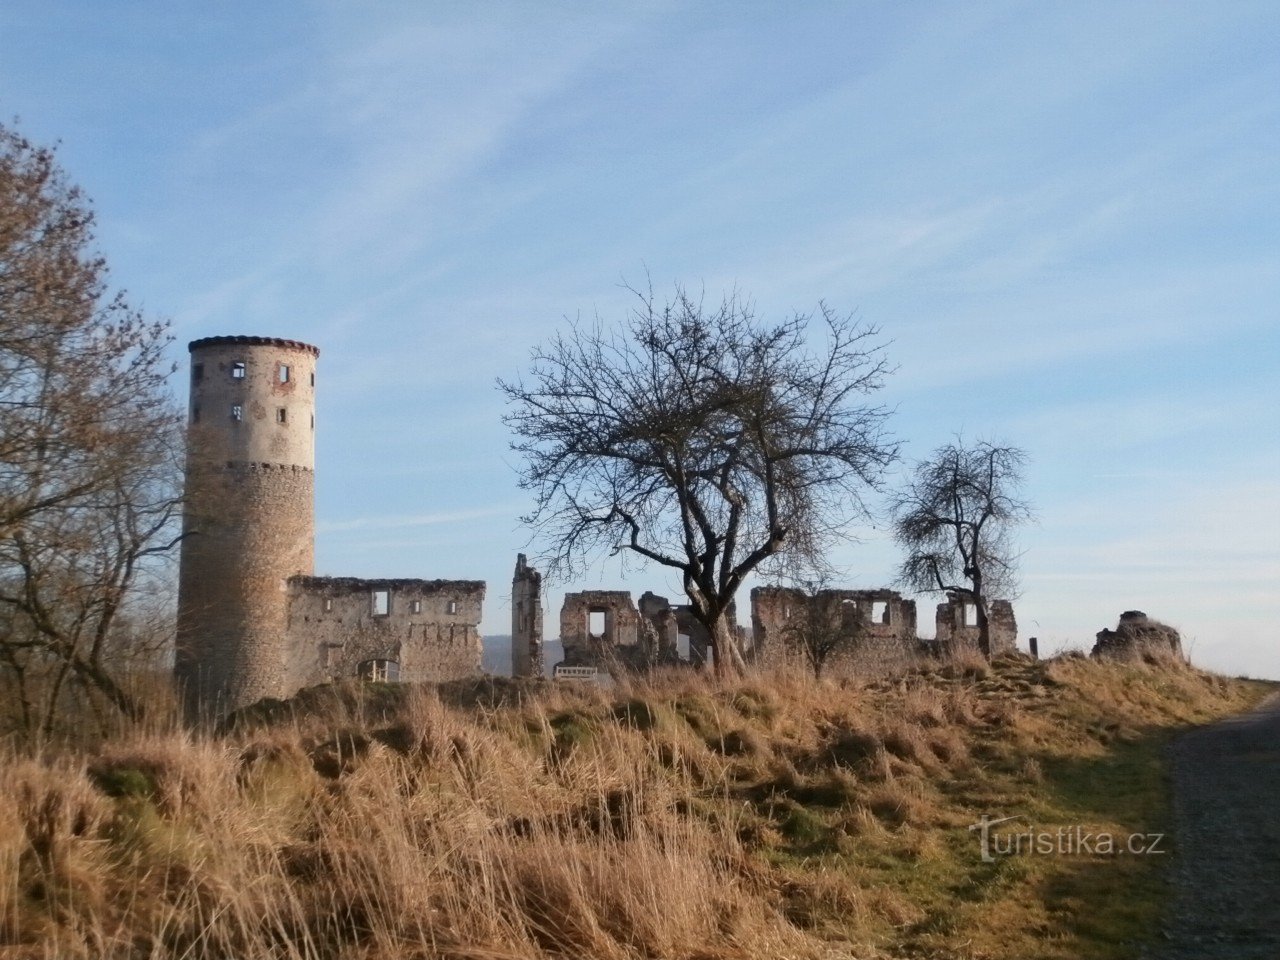 las ruinas del castillo de Zvířetice